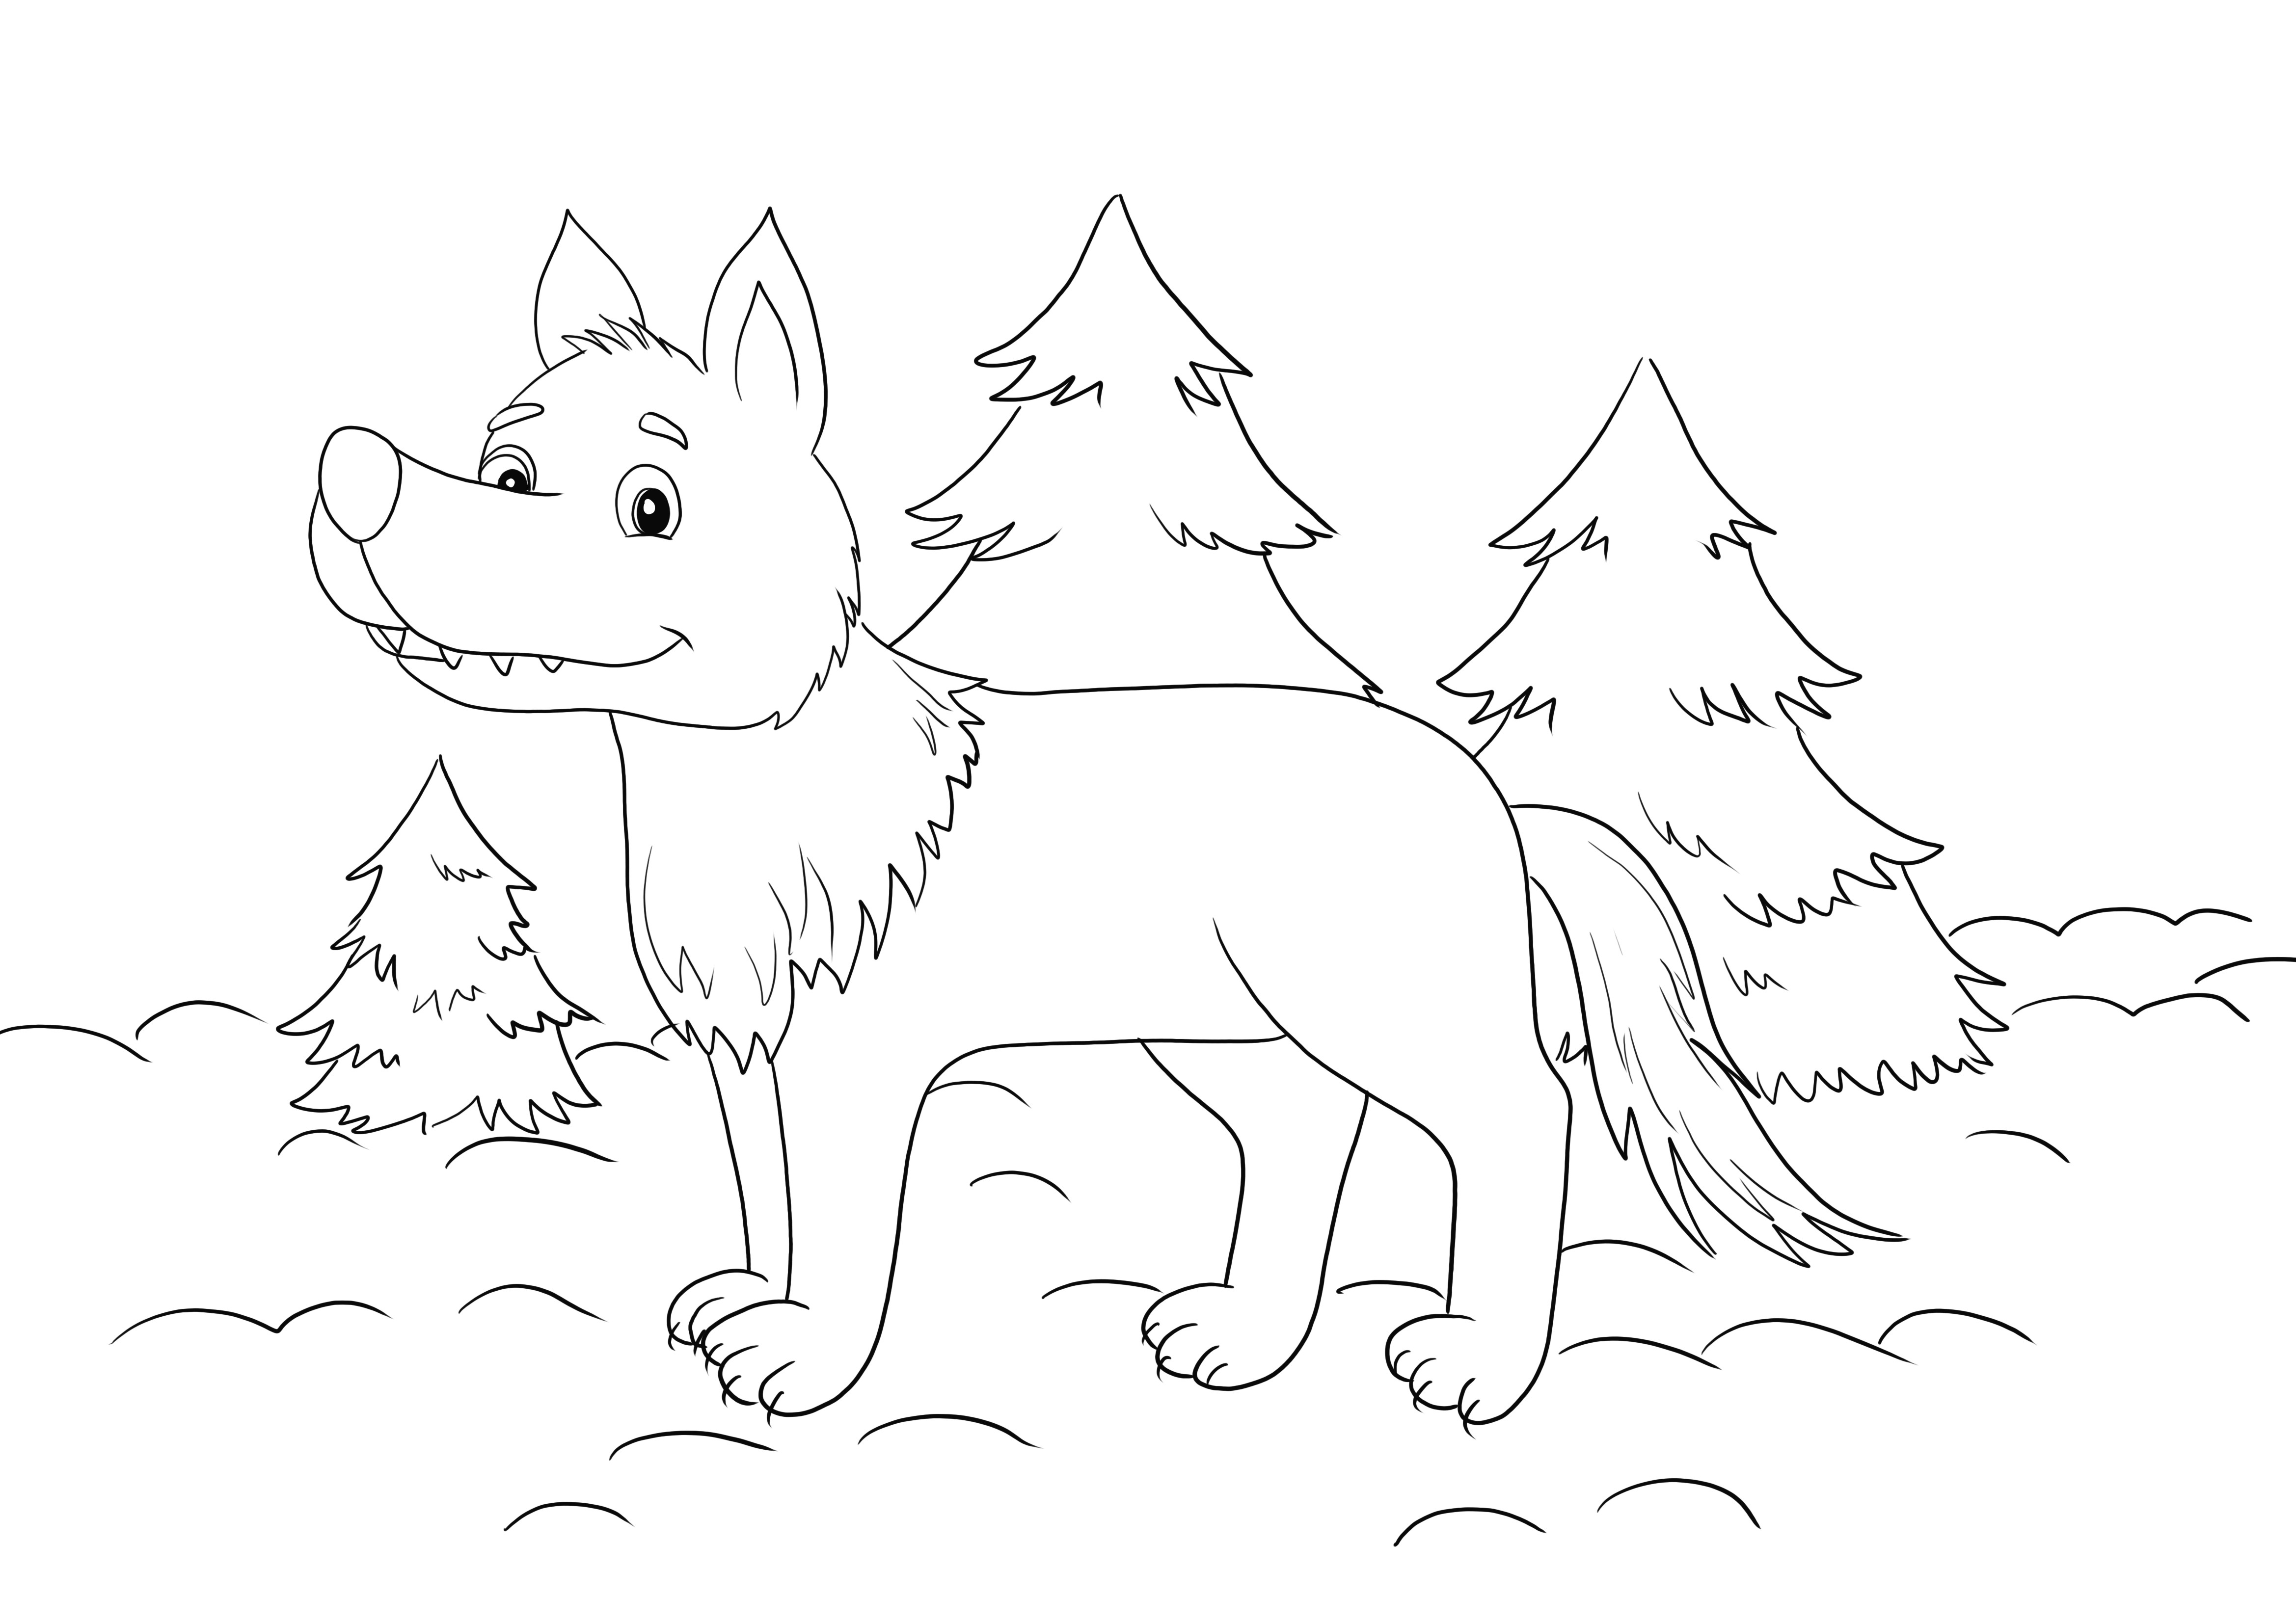 Lobo na floresta colorindo e imprimindo grátis para as crianças aprenderem sobre os lobos